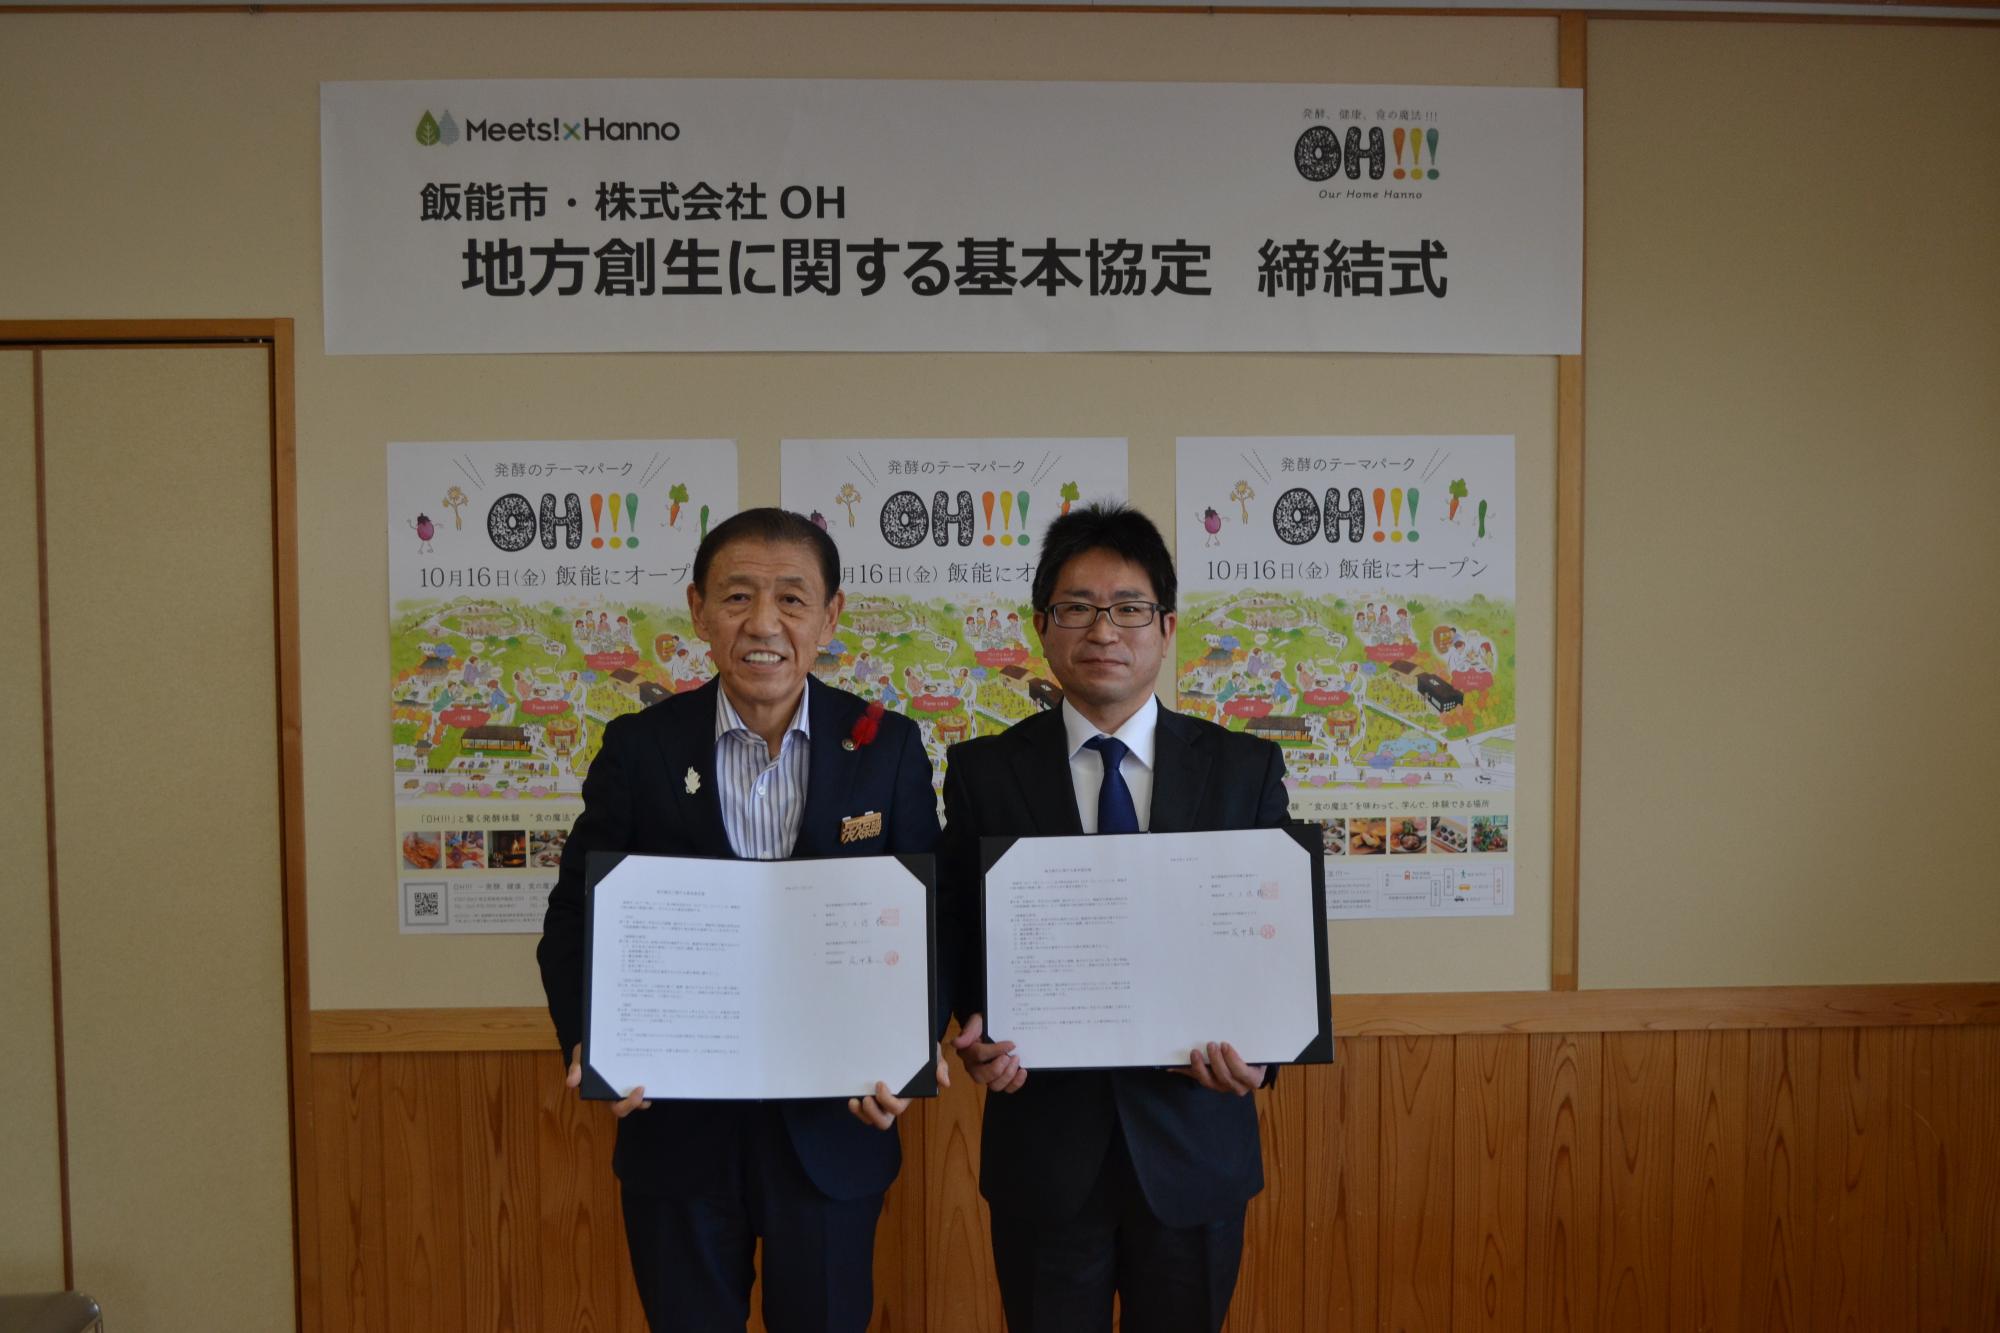 締結式で連携協定書を手に持って並んでいる市長と株式会社OH取代表締役社長の写真